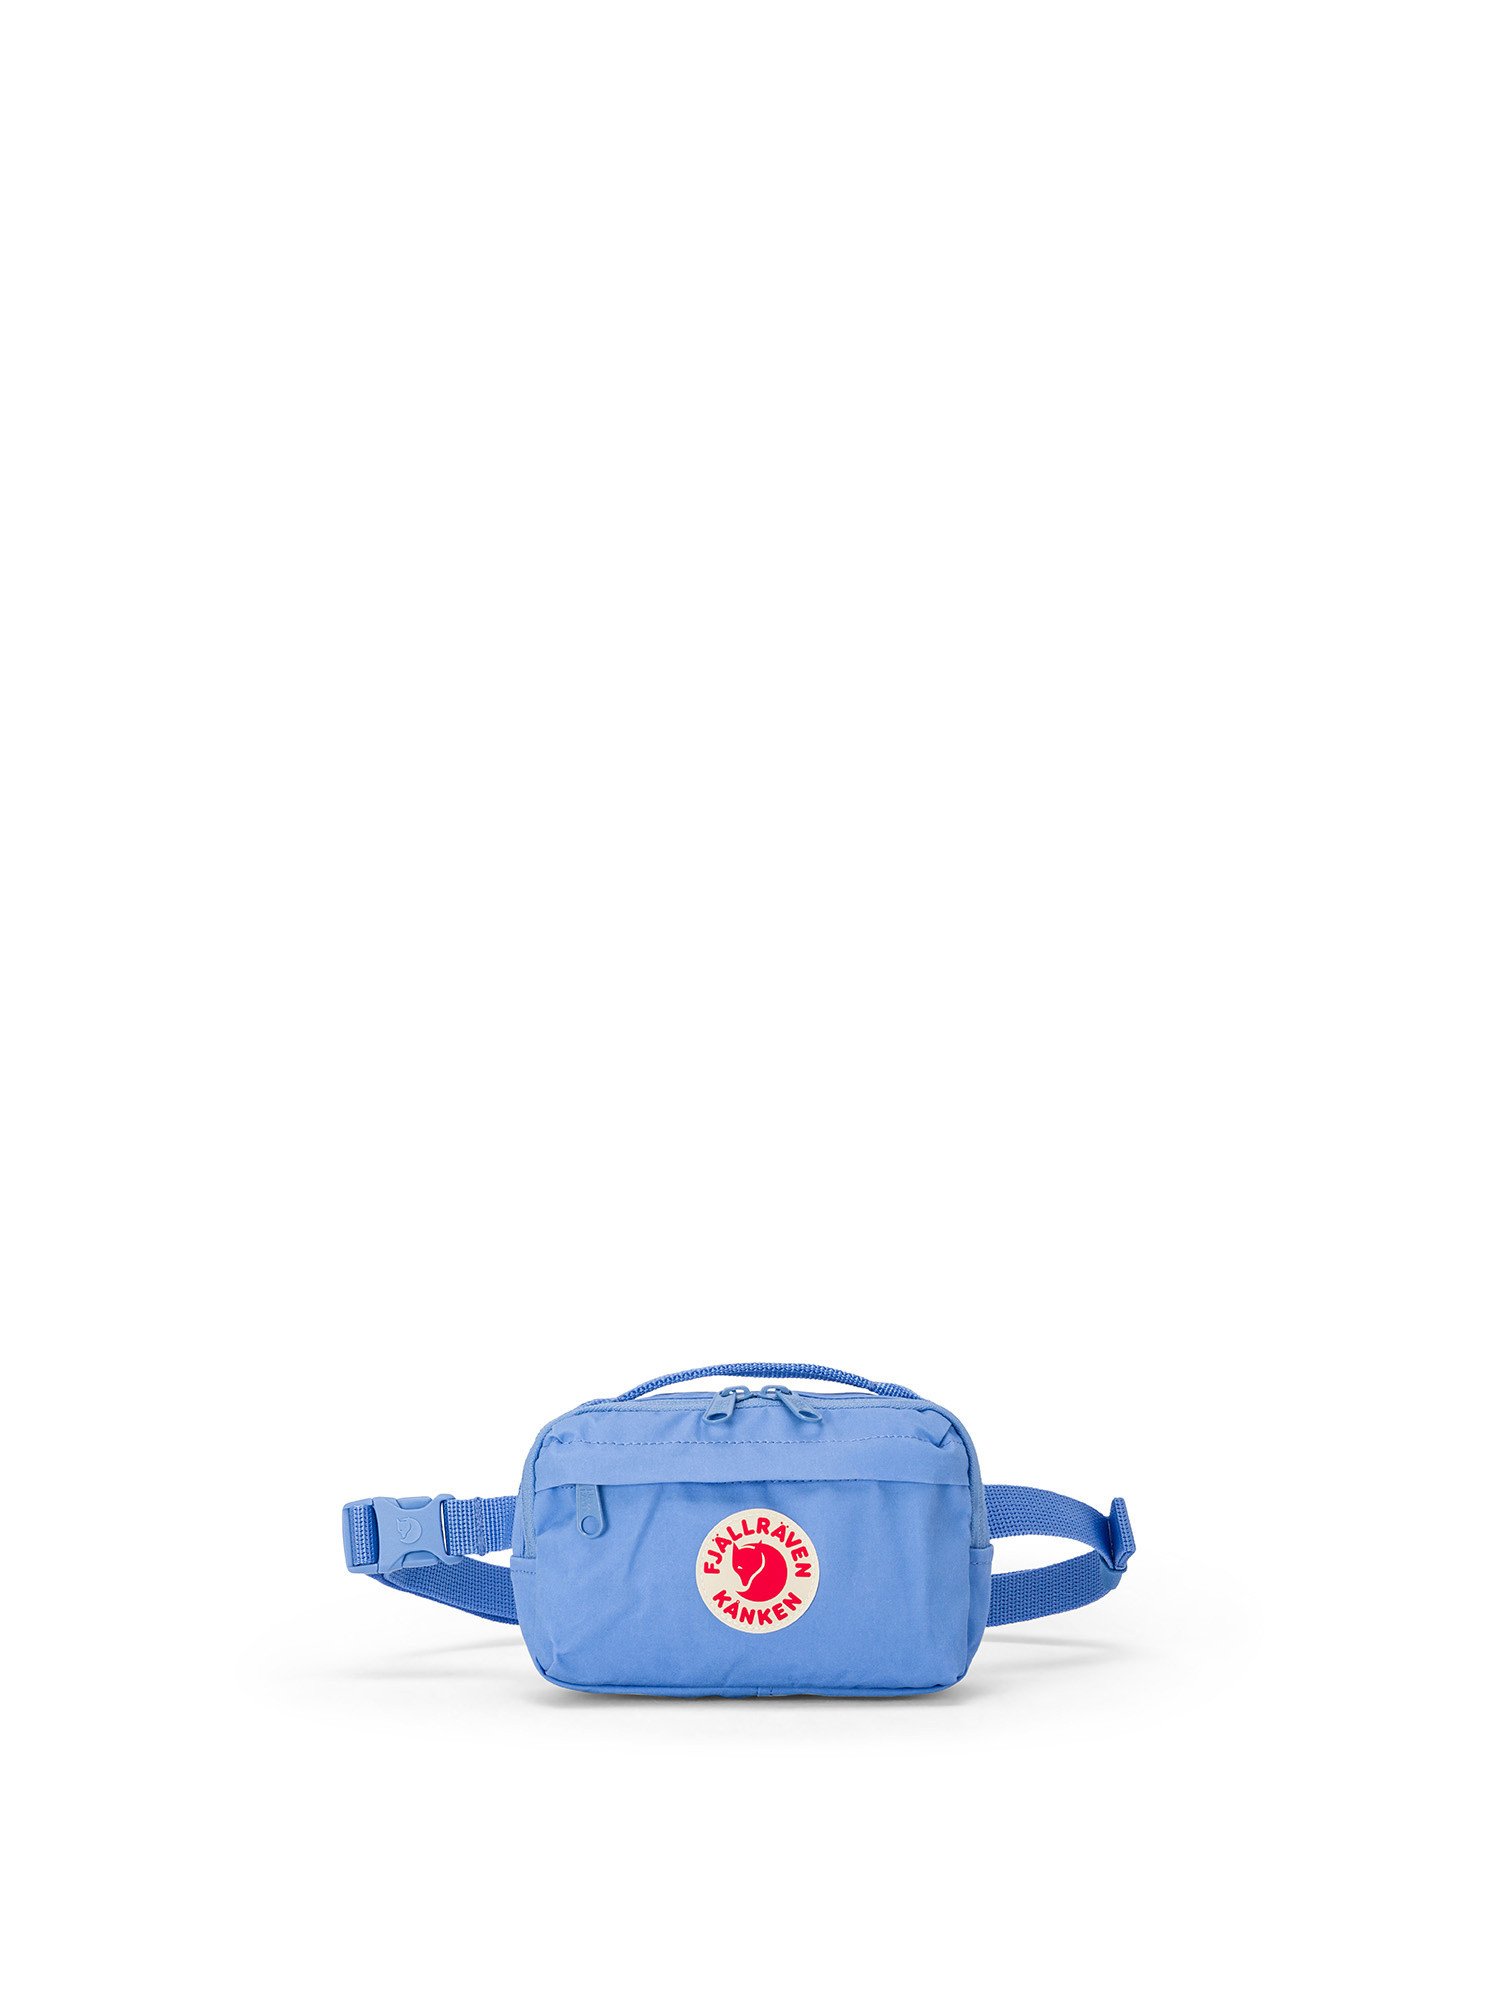 Fjallraven - Kånken hip bag, Light Blue, large image number 0